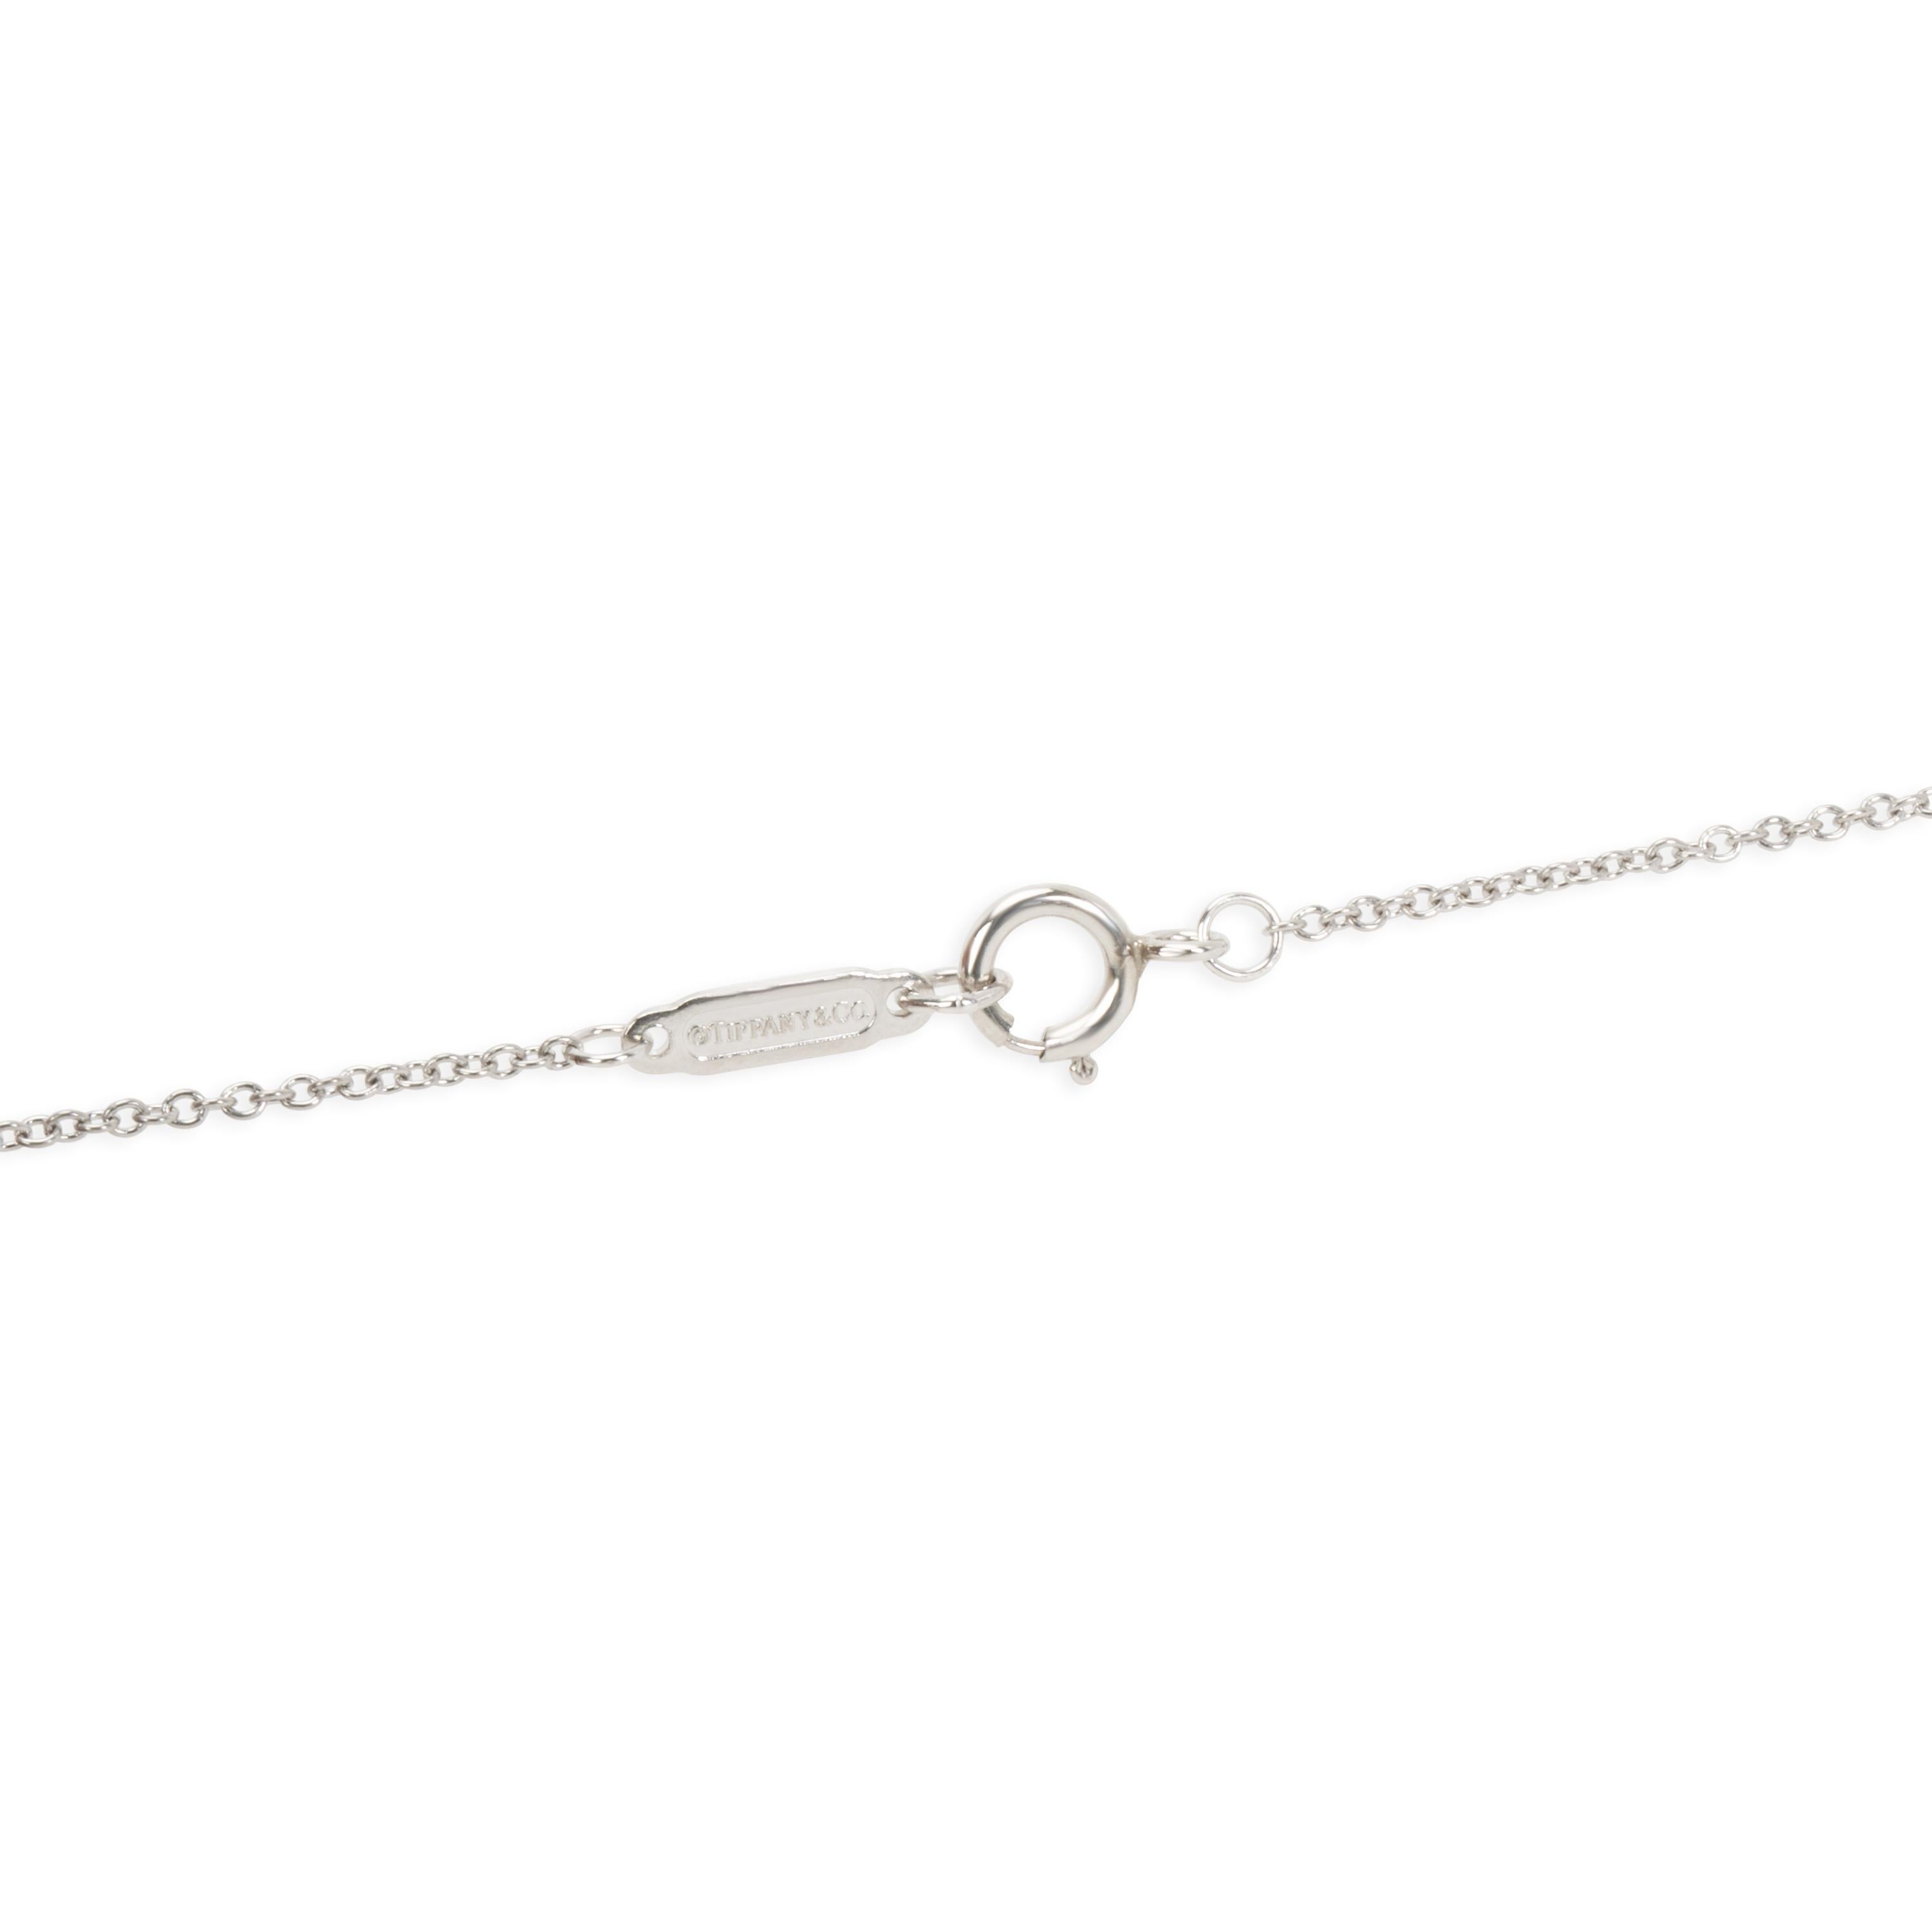 Round Cut Tiffany & Co. Fleur-De-Lis Diamond Key Pendant Necklace in Platinum 0.12 Carat